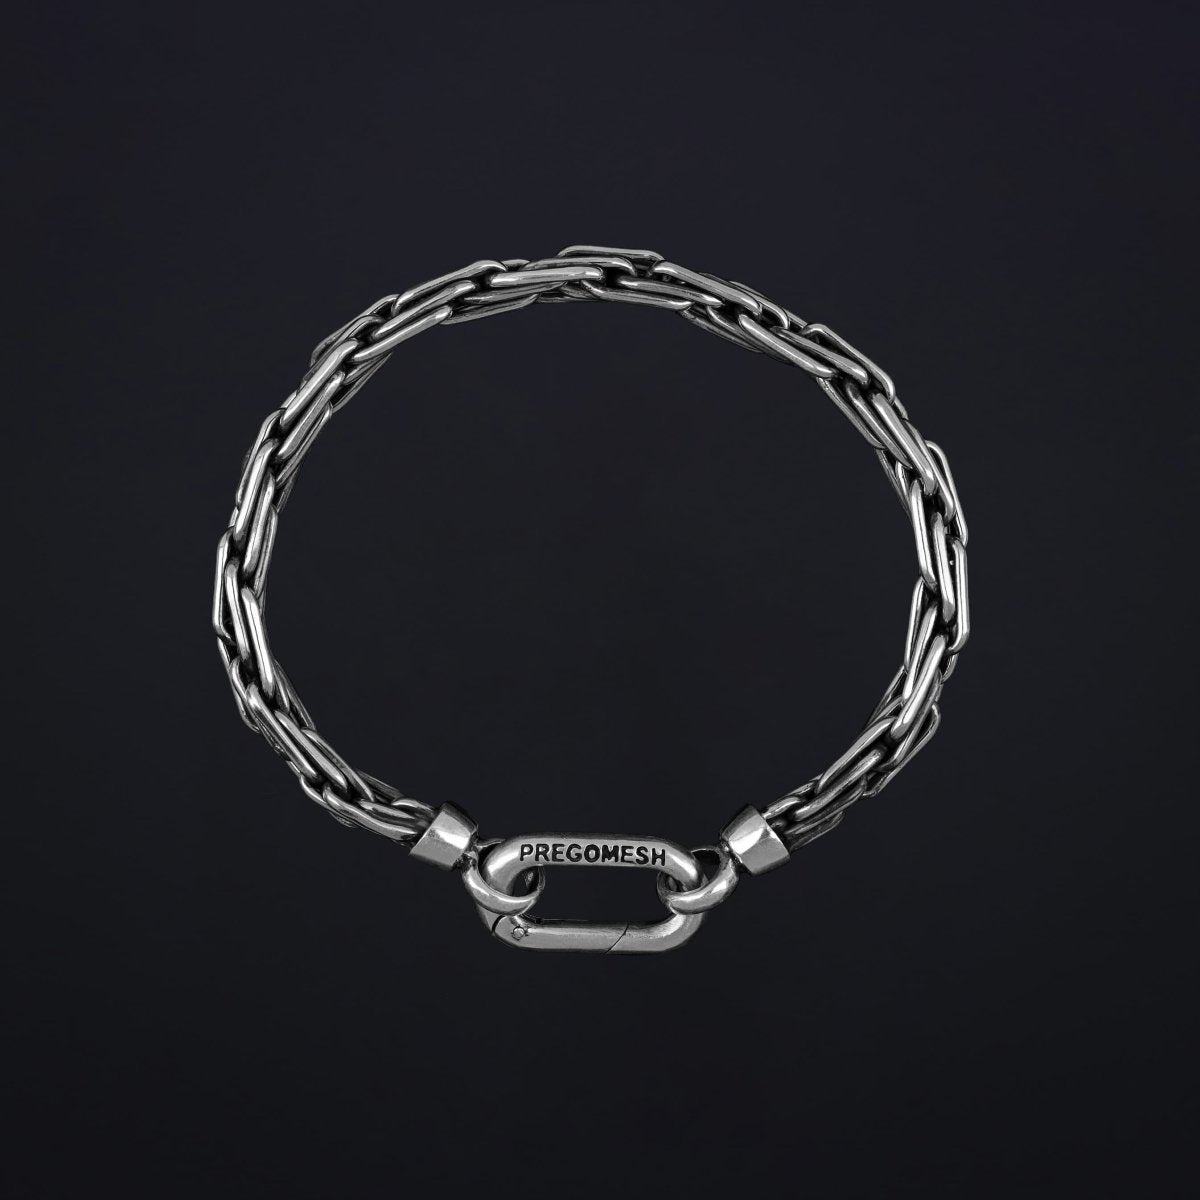 Bracelet "Biner" - Pregomesh